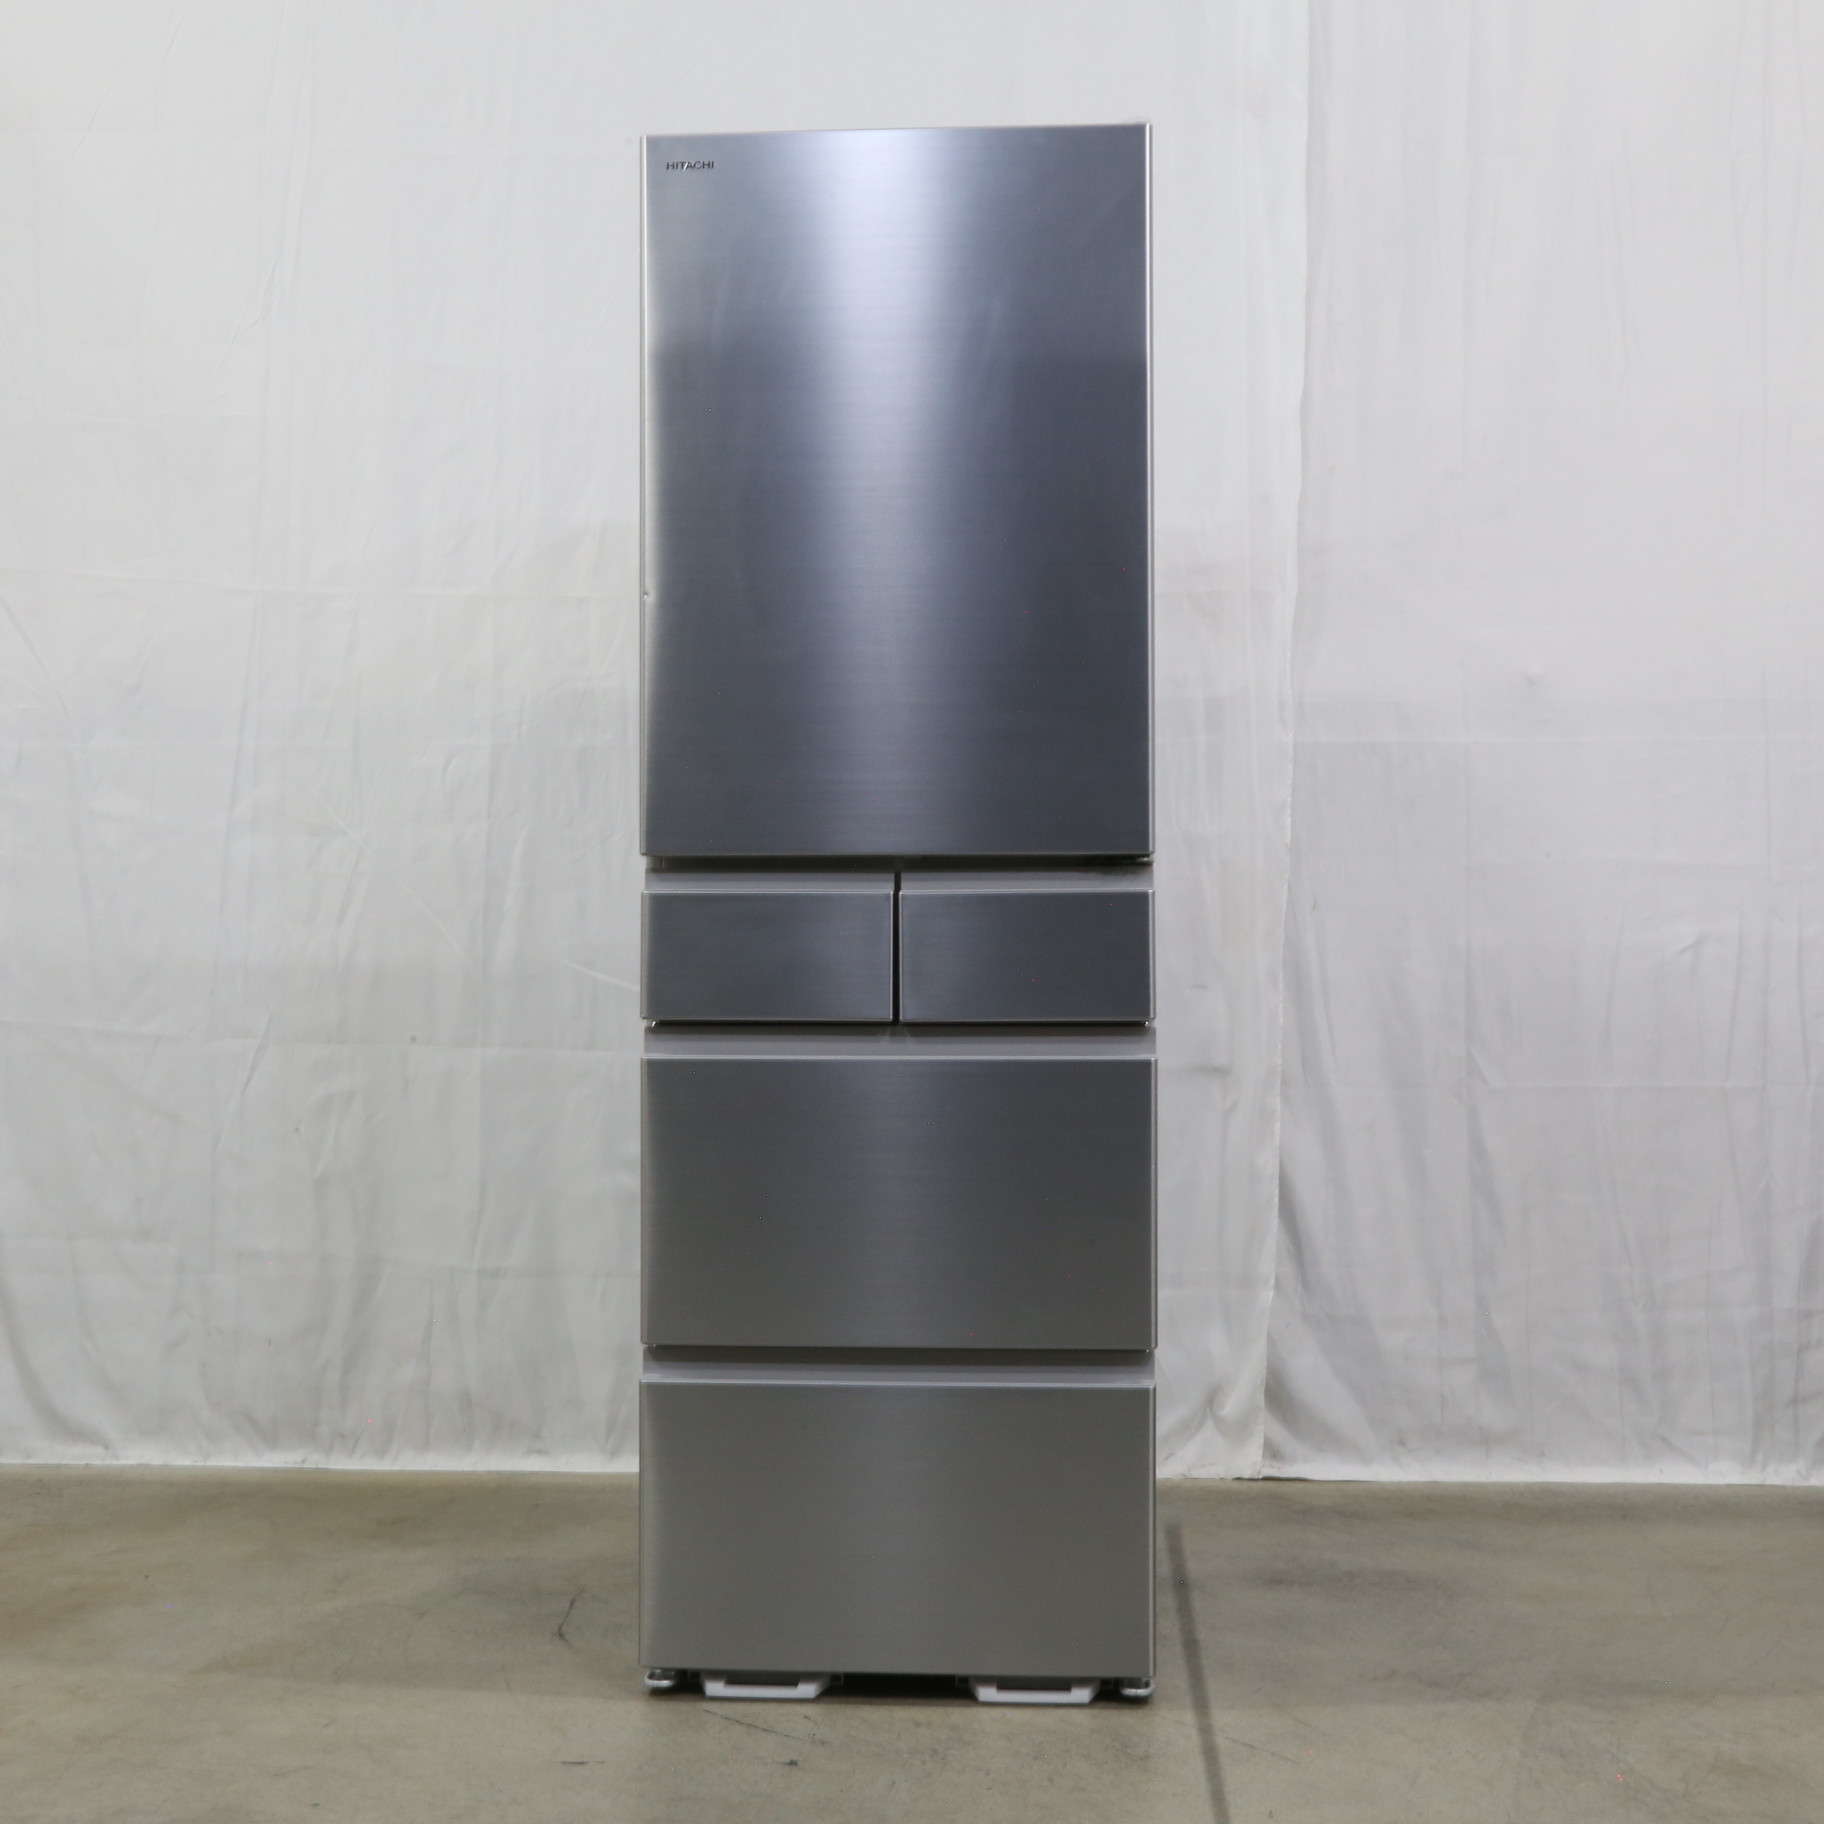 日立の冷蔵庫R-HS47S 2022年製 - キッチン家電